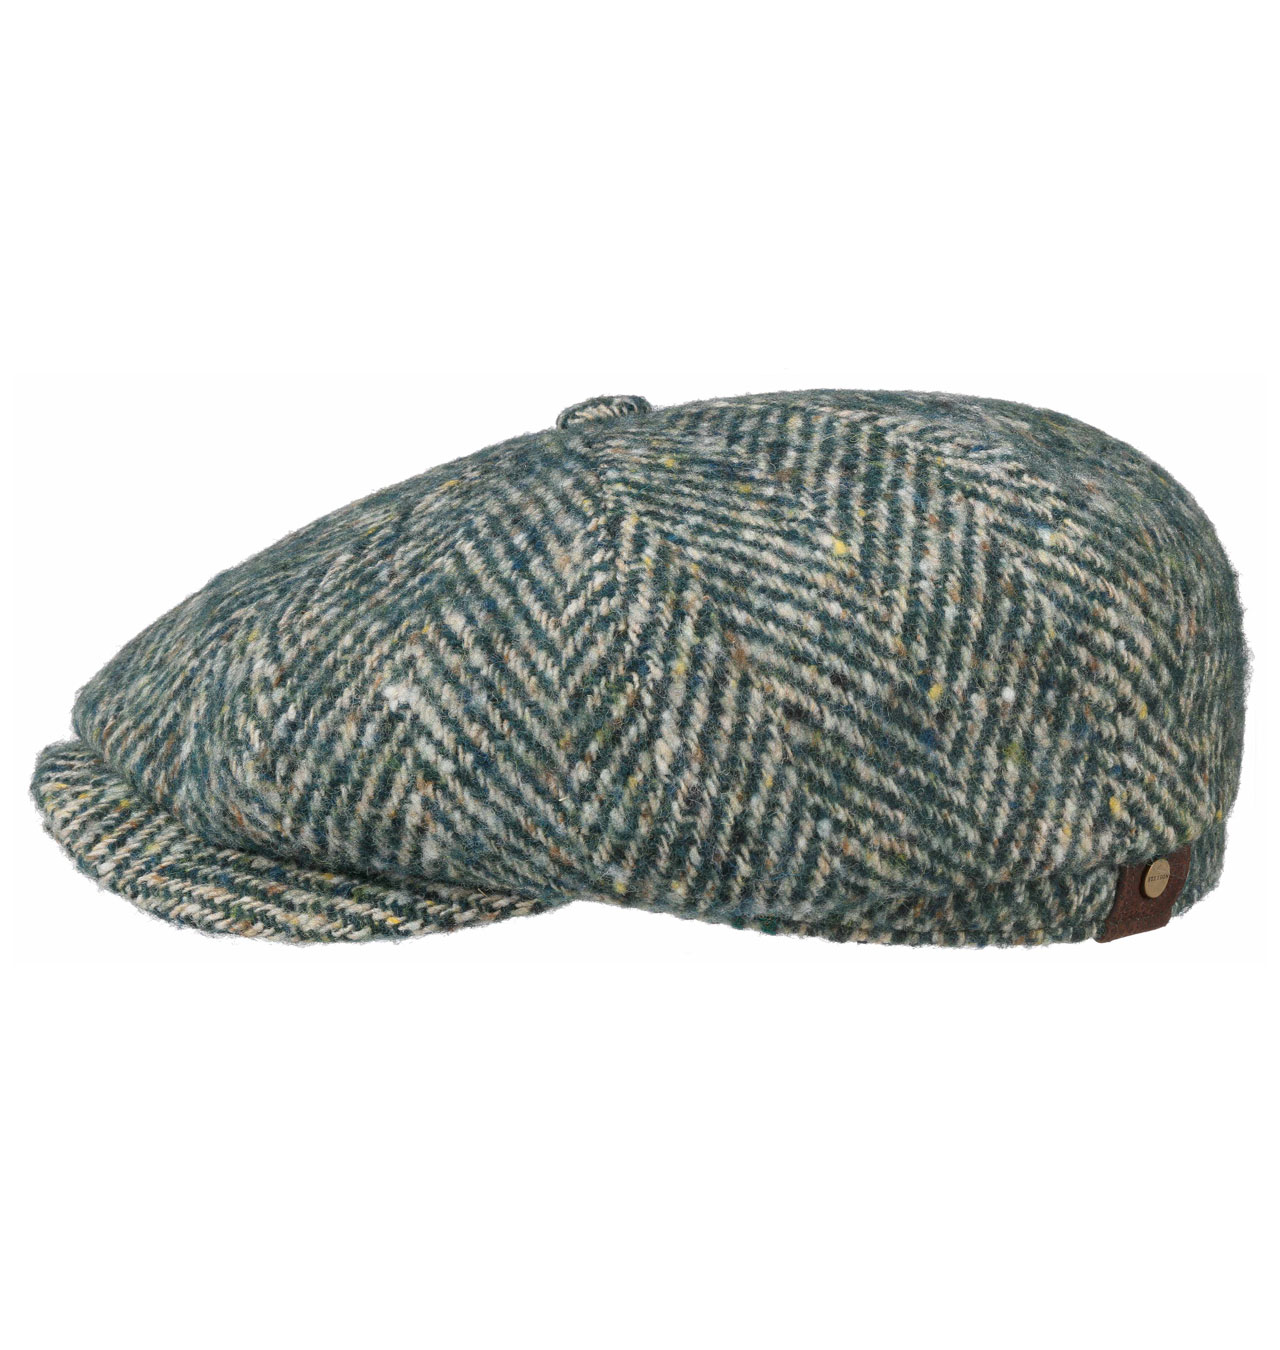 Stetson - Hatteras Wool Colour Neps Flat Cap - Green